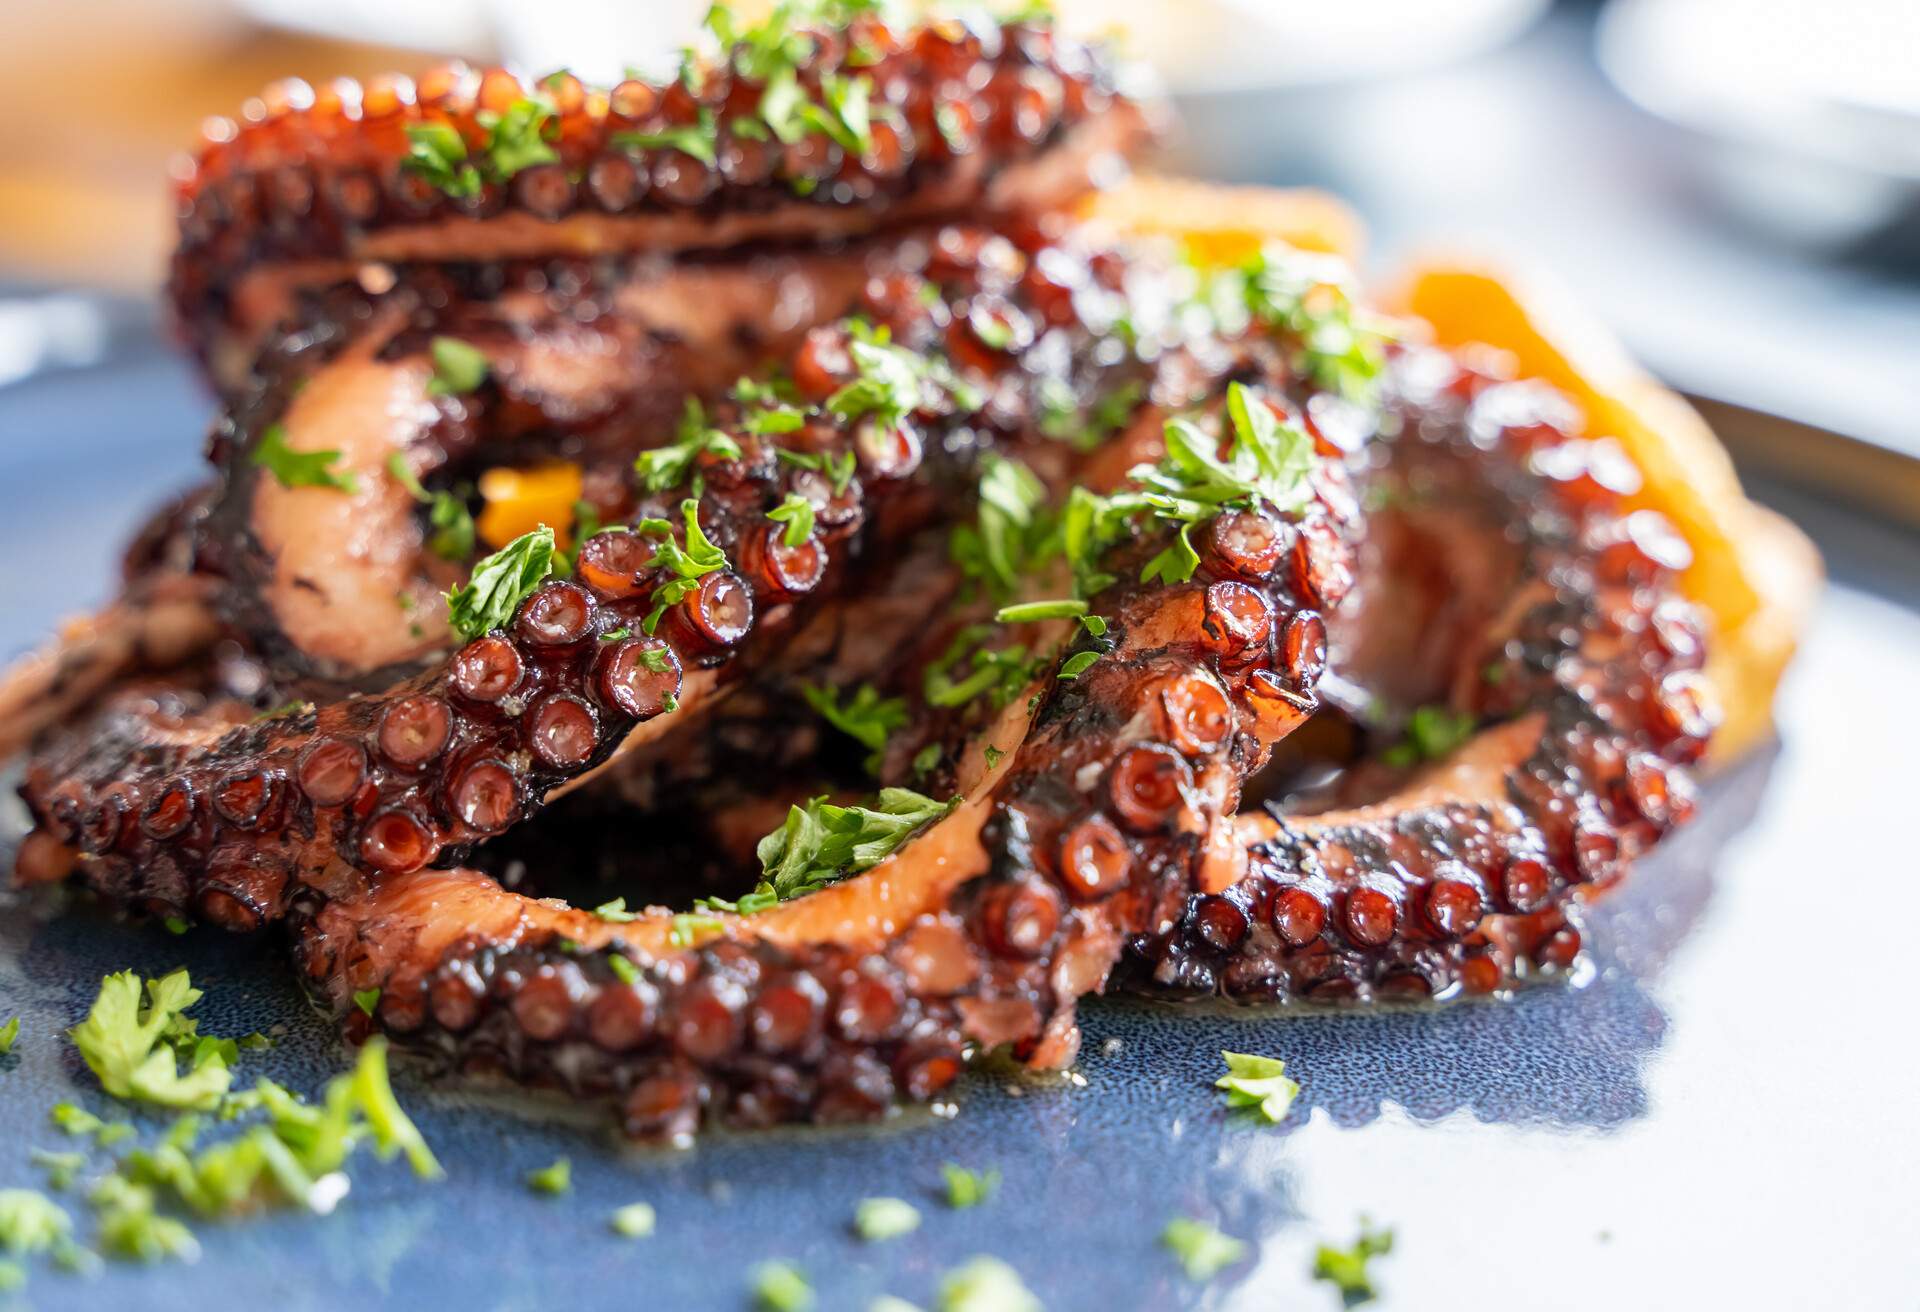 Delicious gourmet grilled octopus, or Octopus a la gallega